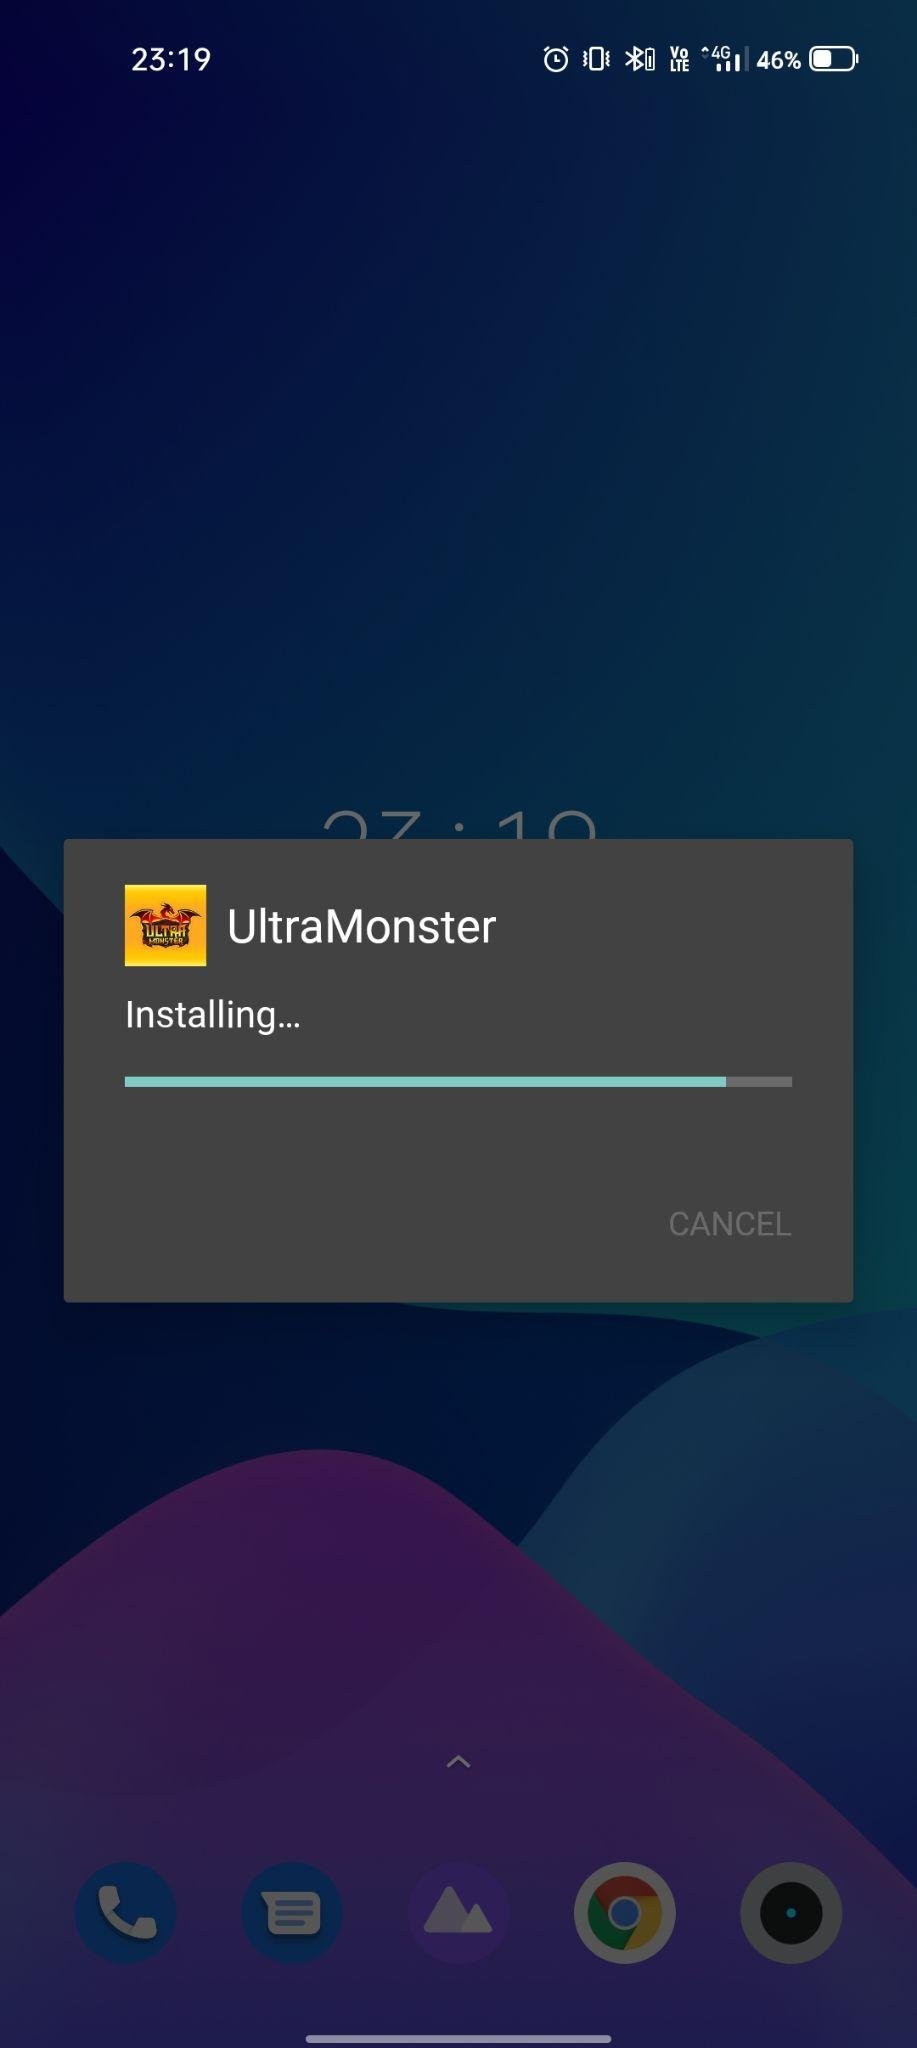 ultramonster apk installing